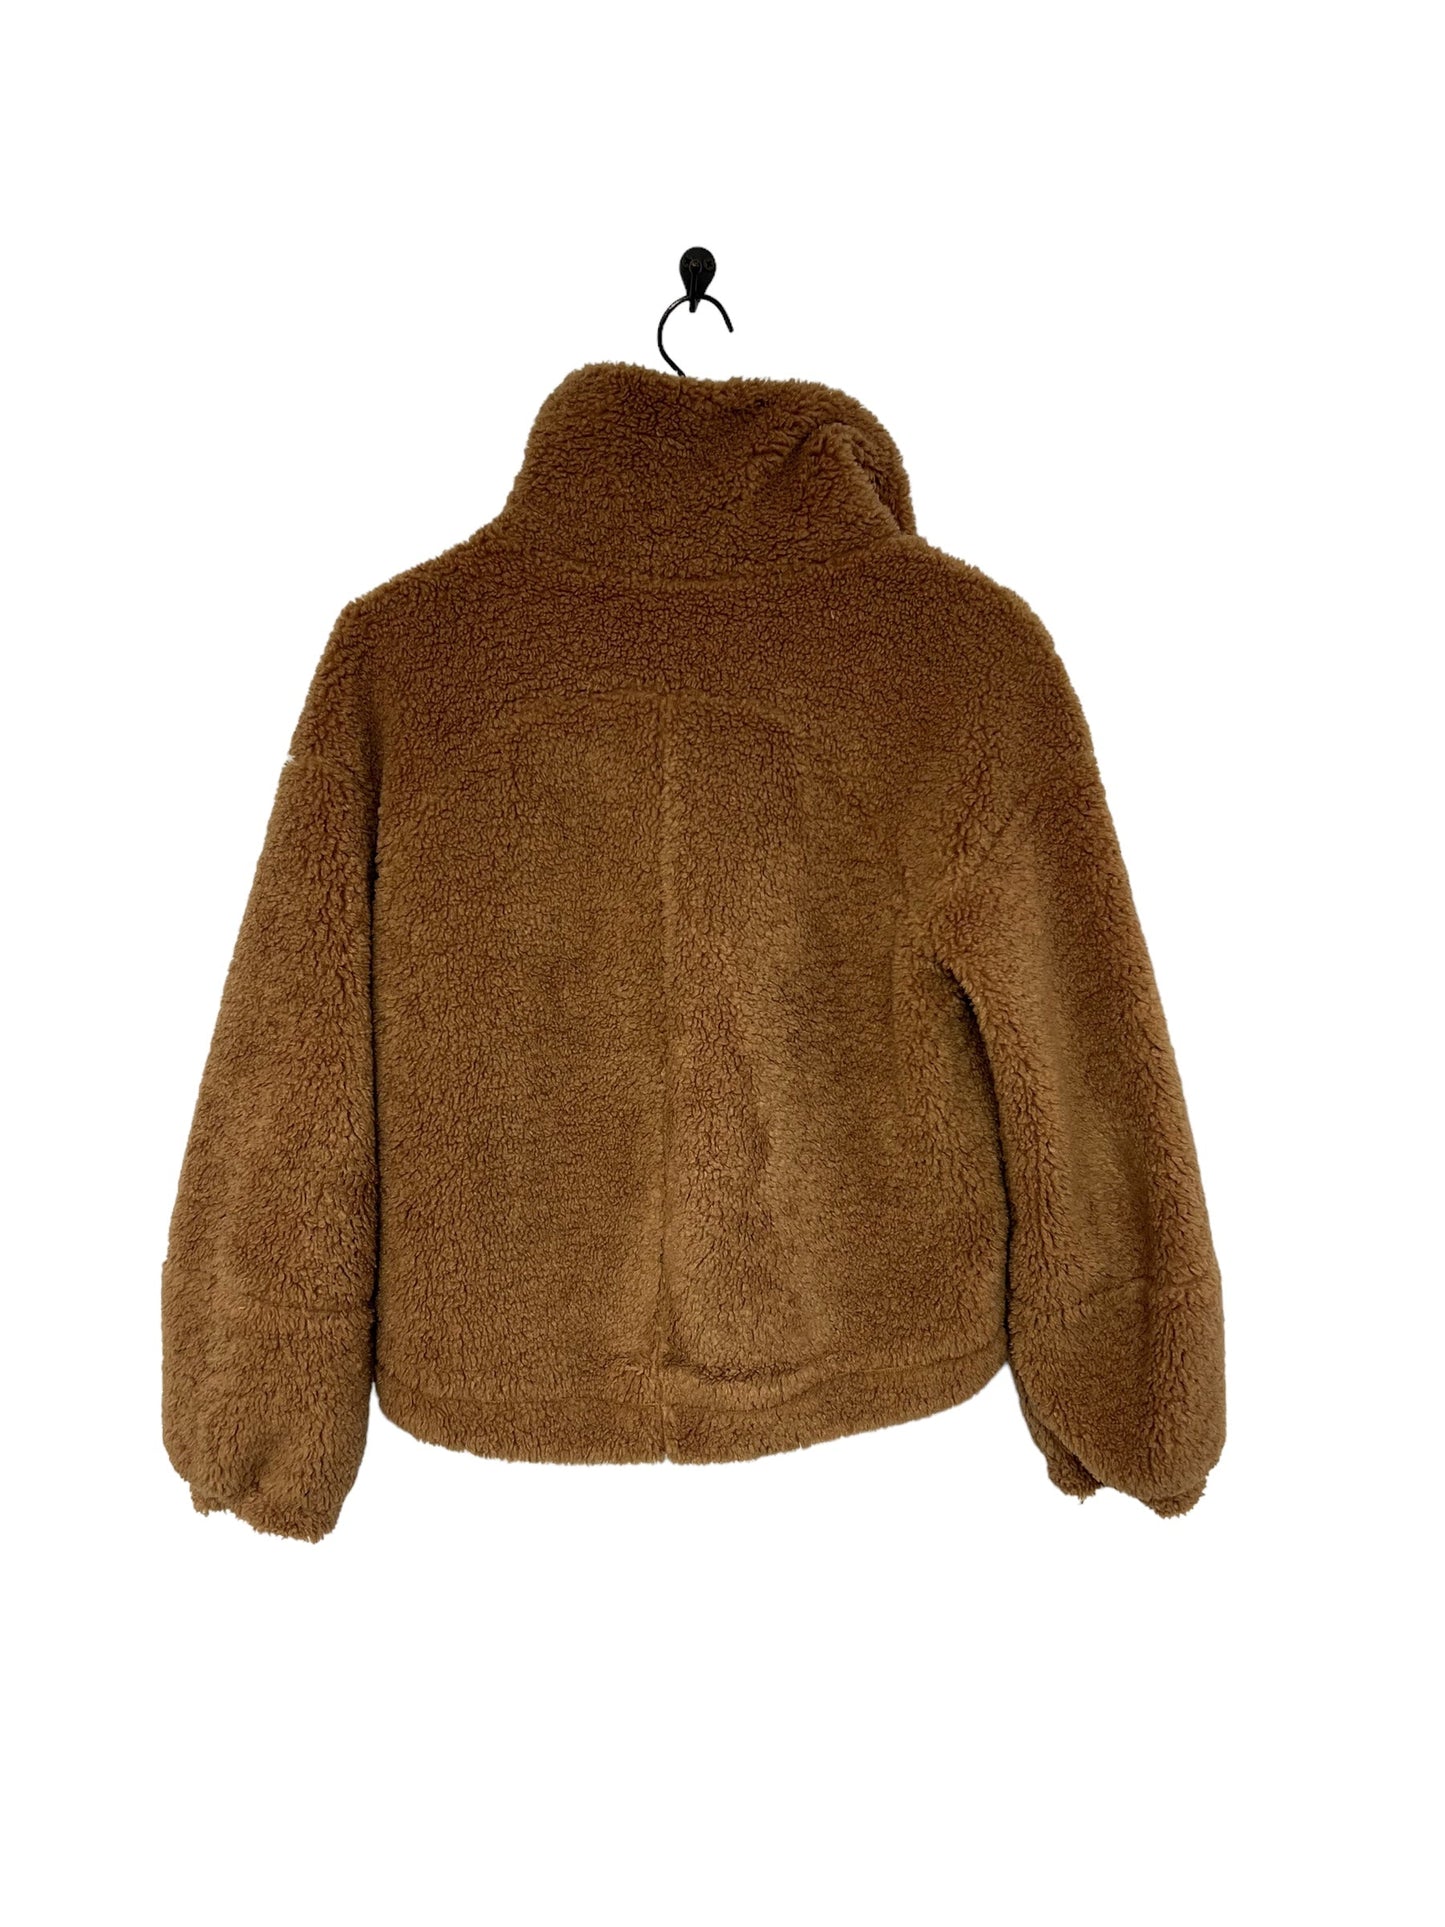 Jacket Faux Fur & Sherpa By Lululemon  Size: 4